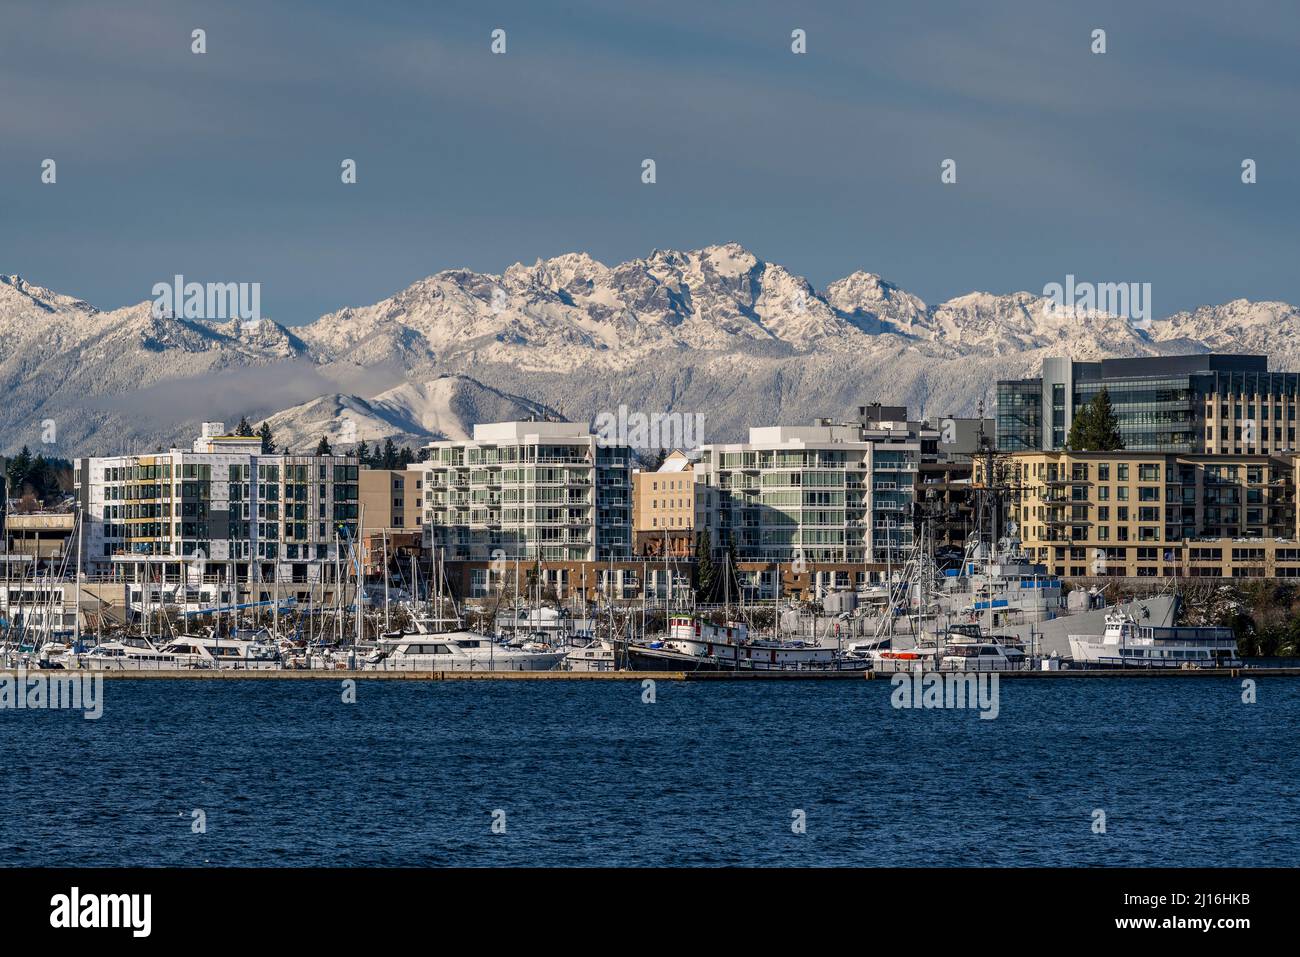 Skyline della città con montagne innevate della penisola olimpica sullo sfondo, Bremerton, Washington, USA Foto Stock